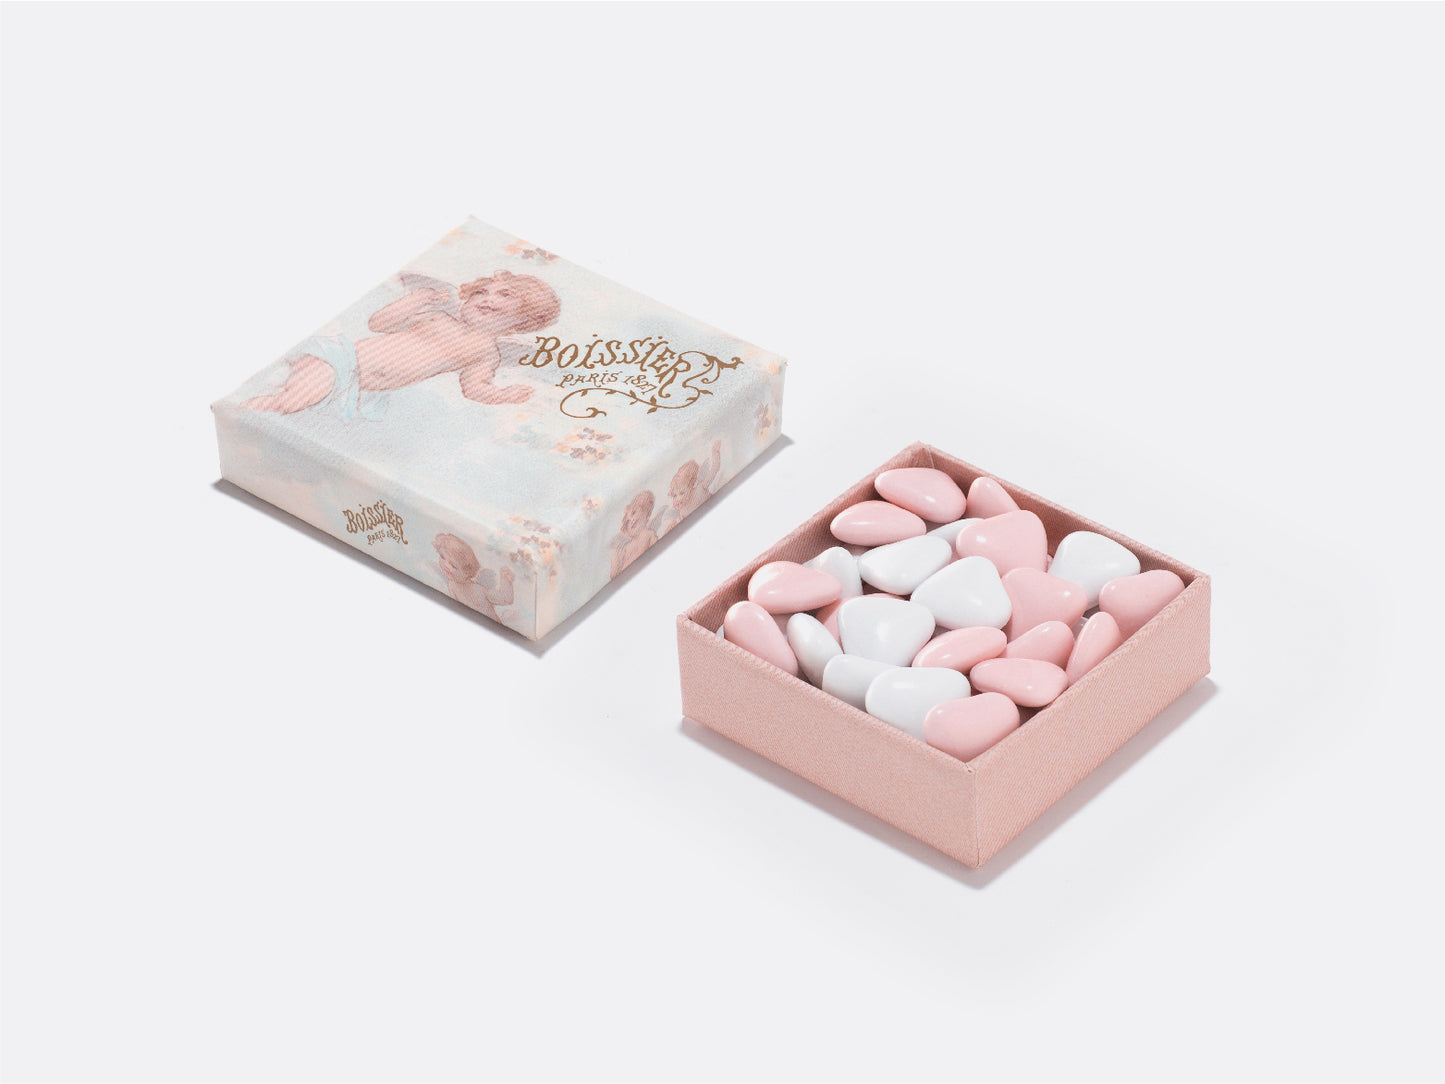 Dragées au chocolat en forme de cœur roses et blanches dans boîte bijoux de 50g